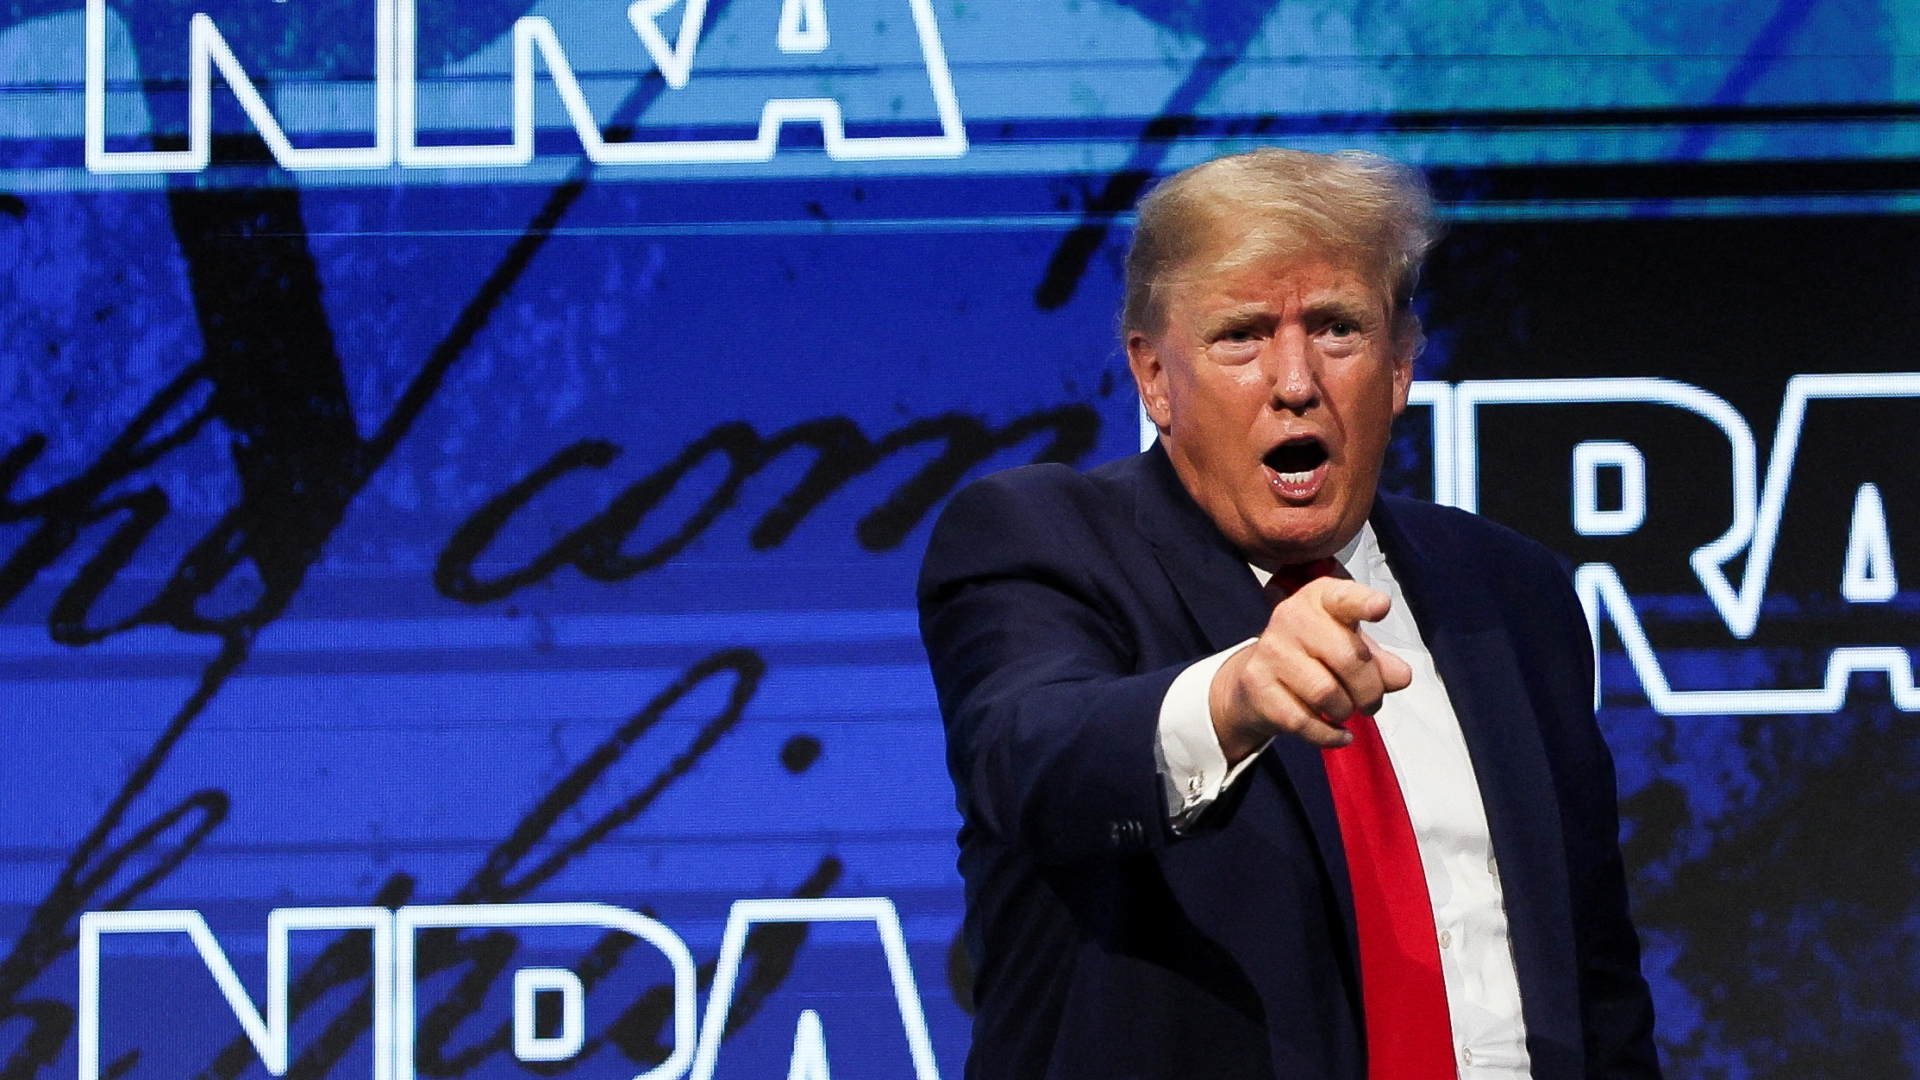 Der ehemalige US-Präsident Donald Trump auf der NRA-Jahrestagung | REUTERS